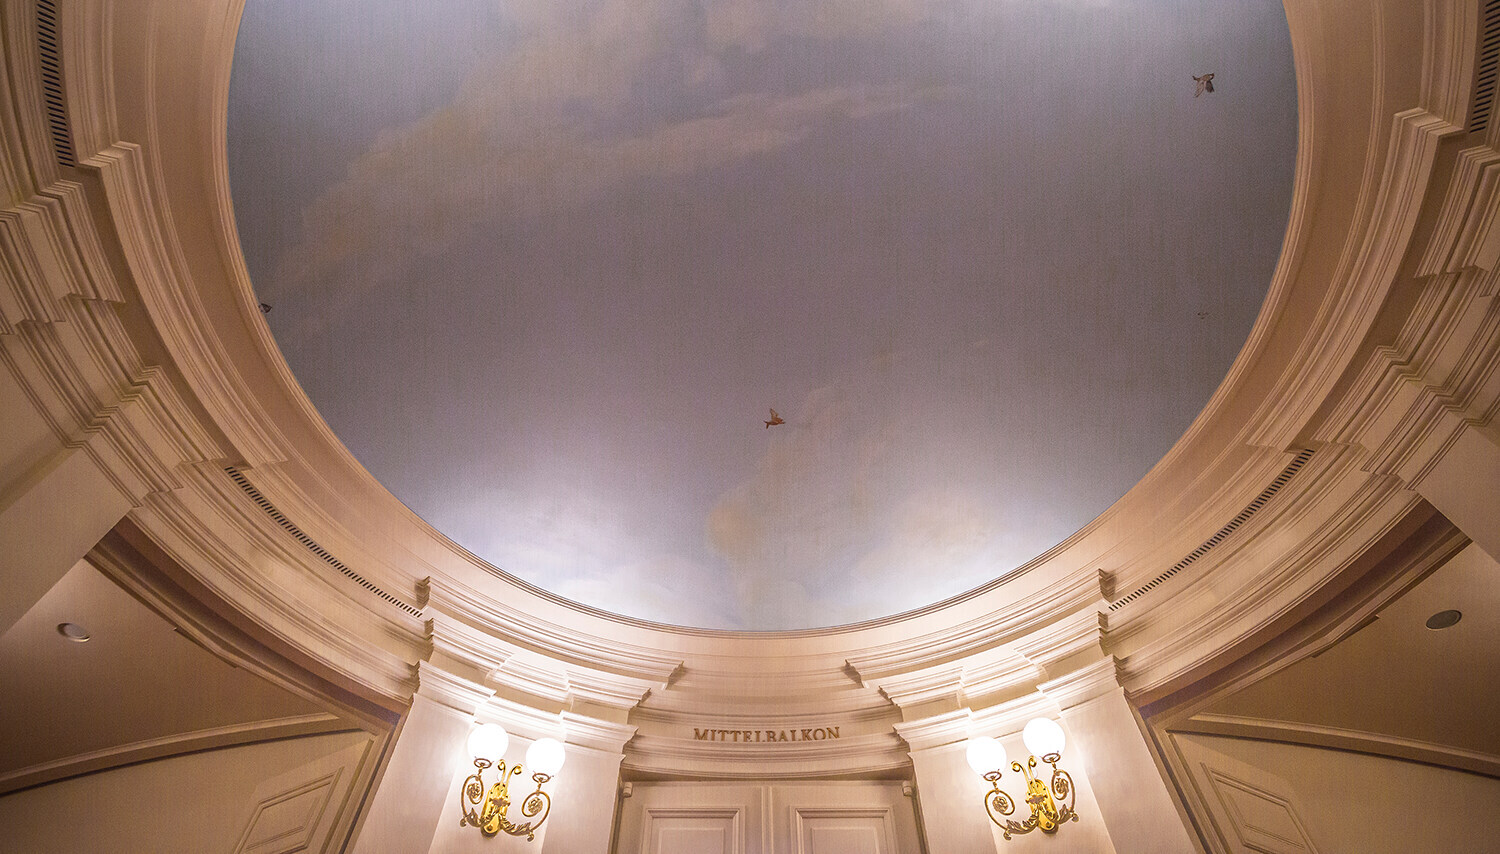 Mit blassblauem Himmel, weißen Wolken und kleinen Vögeln bemalte Decke vor dem Mittelbalkon im Foyer der Semperoper